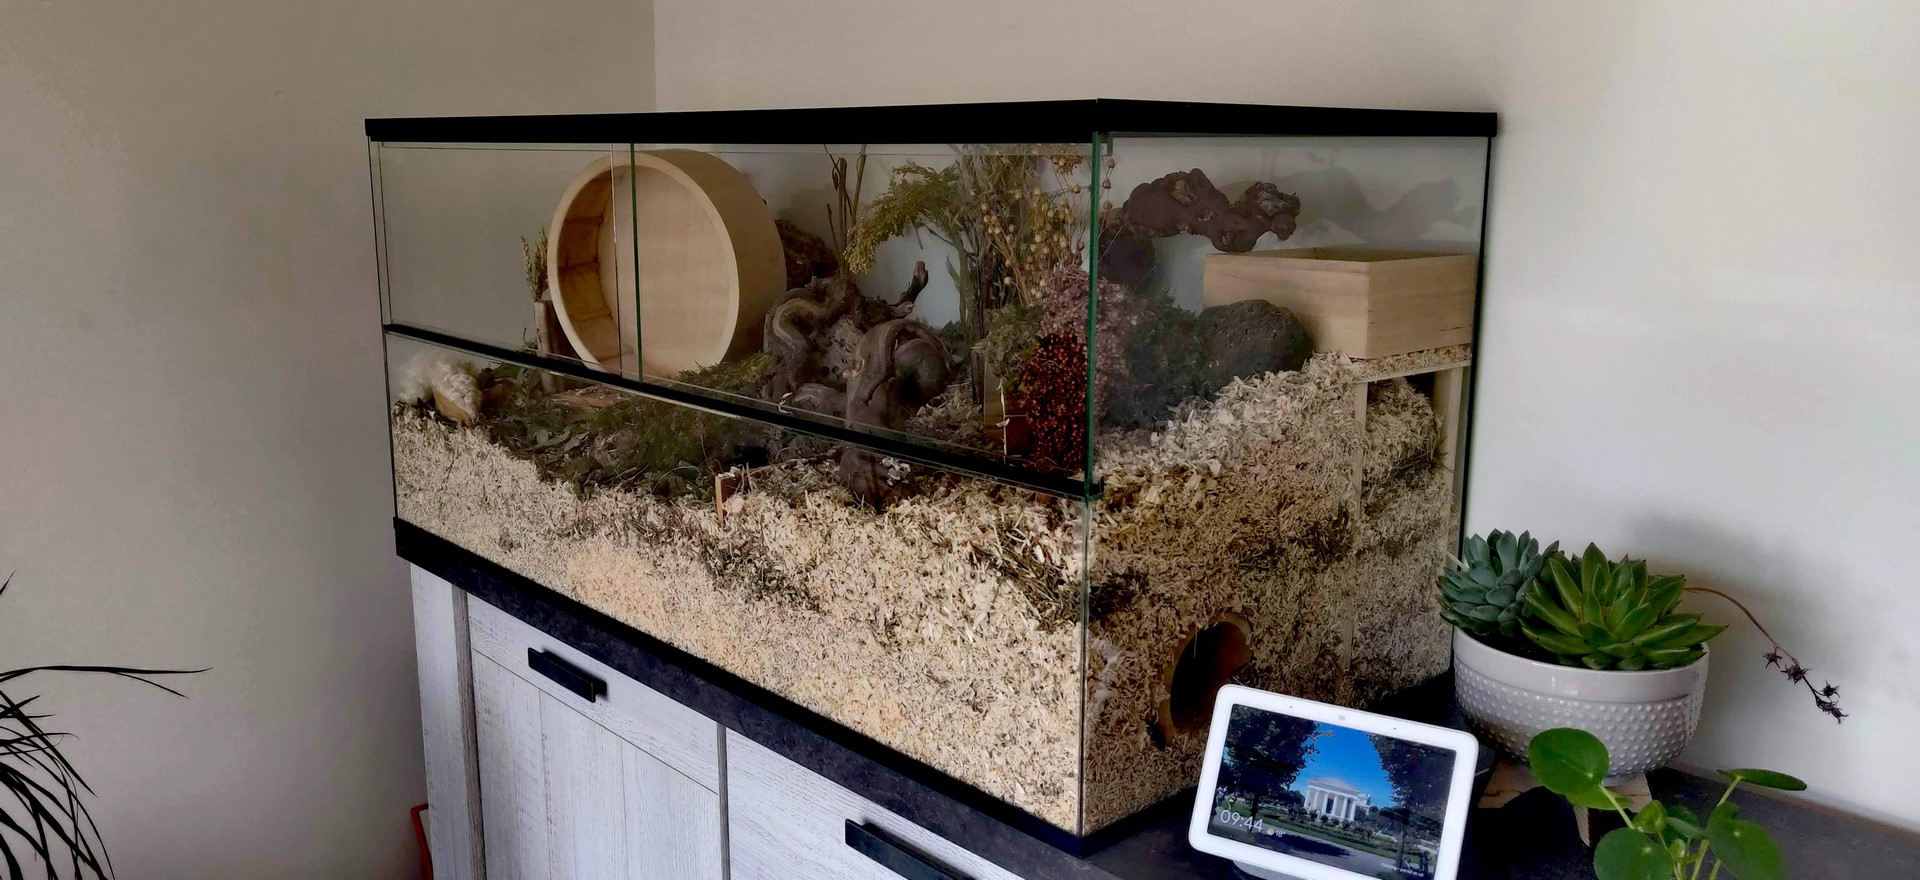 Glazen knaagdieren terrarium voor hamster met schuifruiten